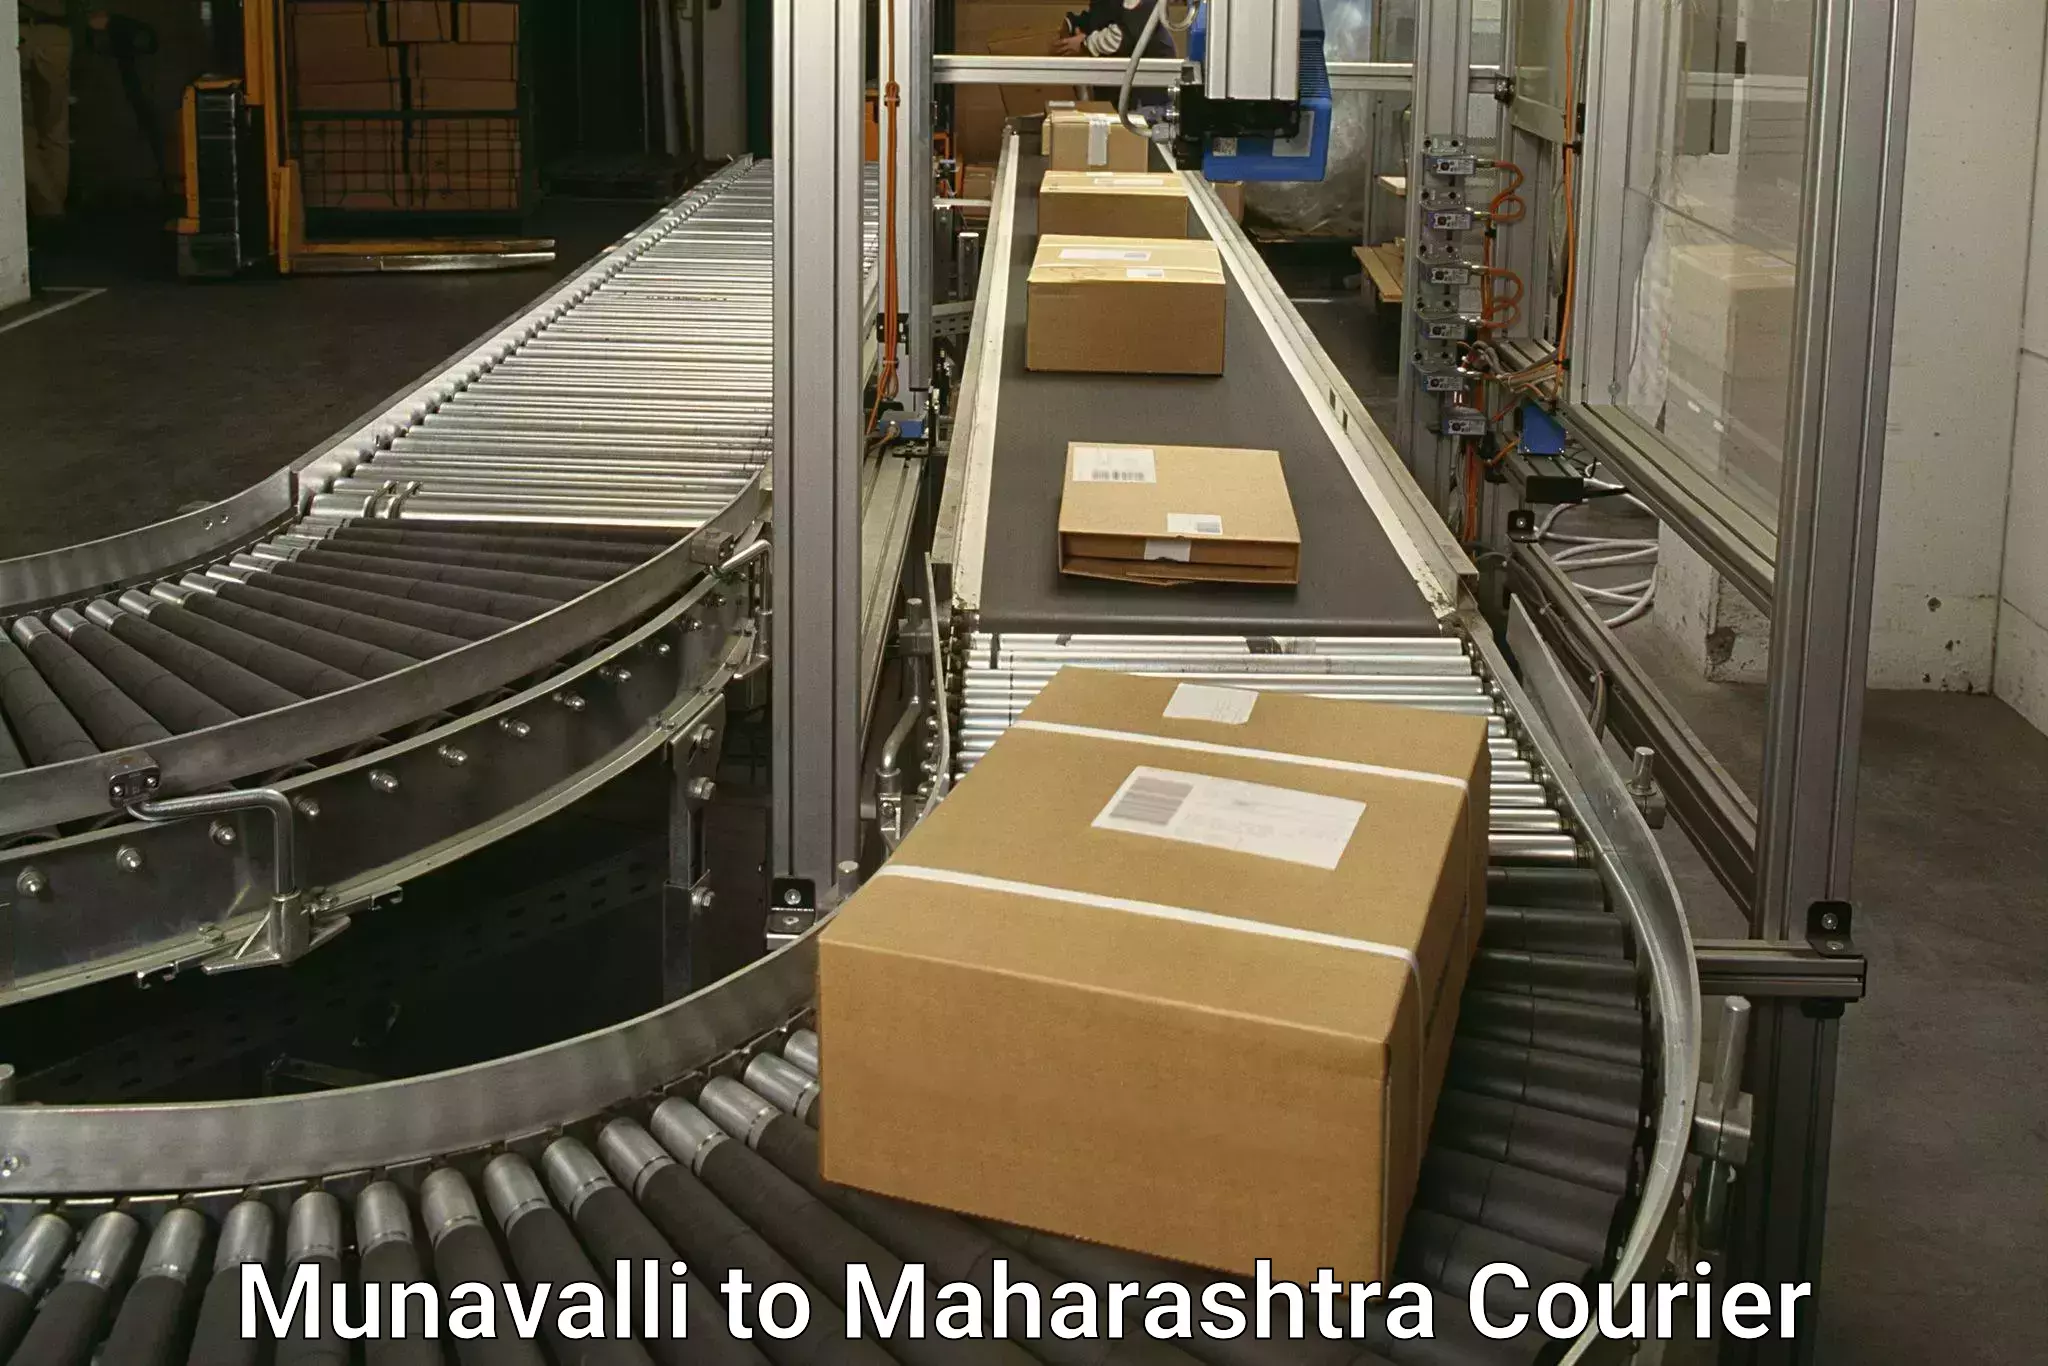 Courier service comparison Munavalli to Jawaharlal Nehru Port Nhava Sheva